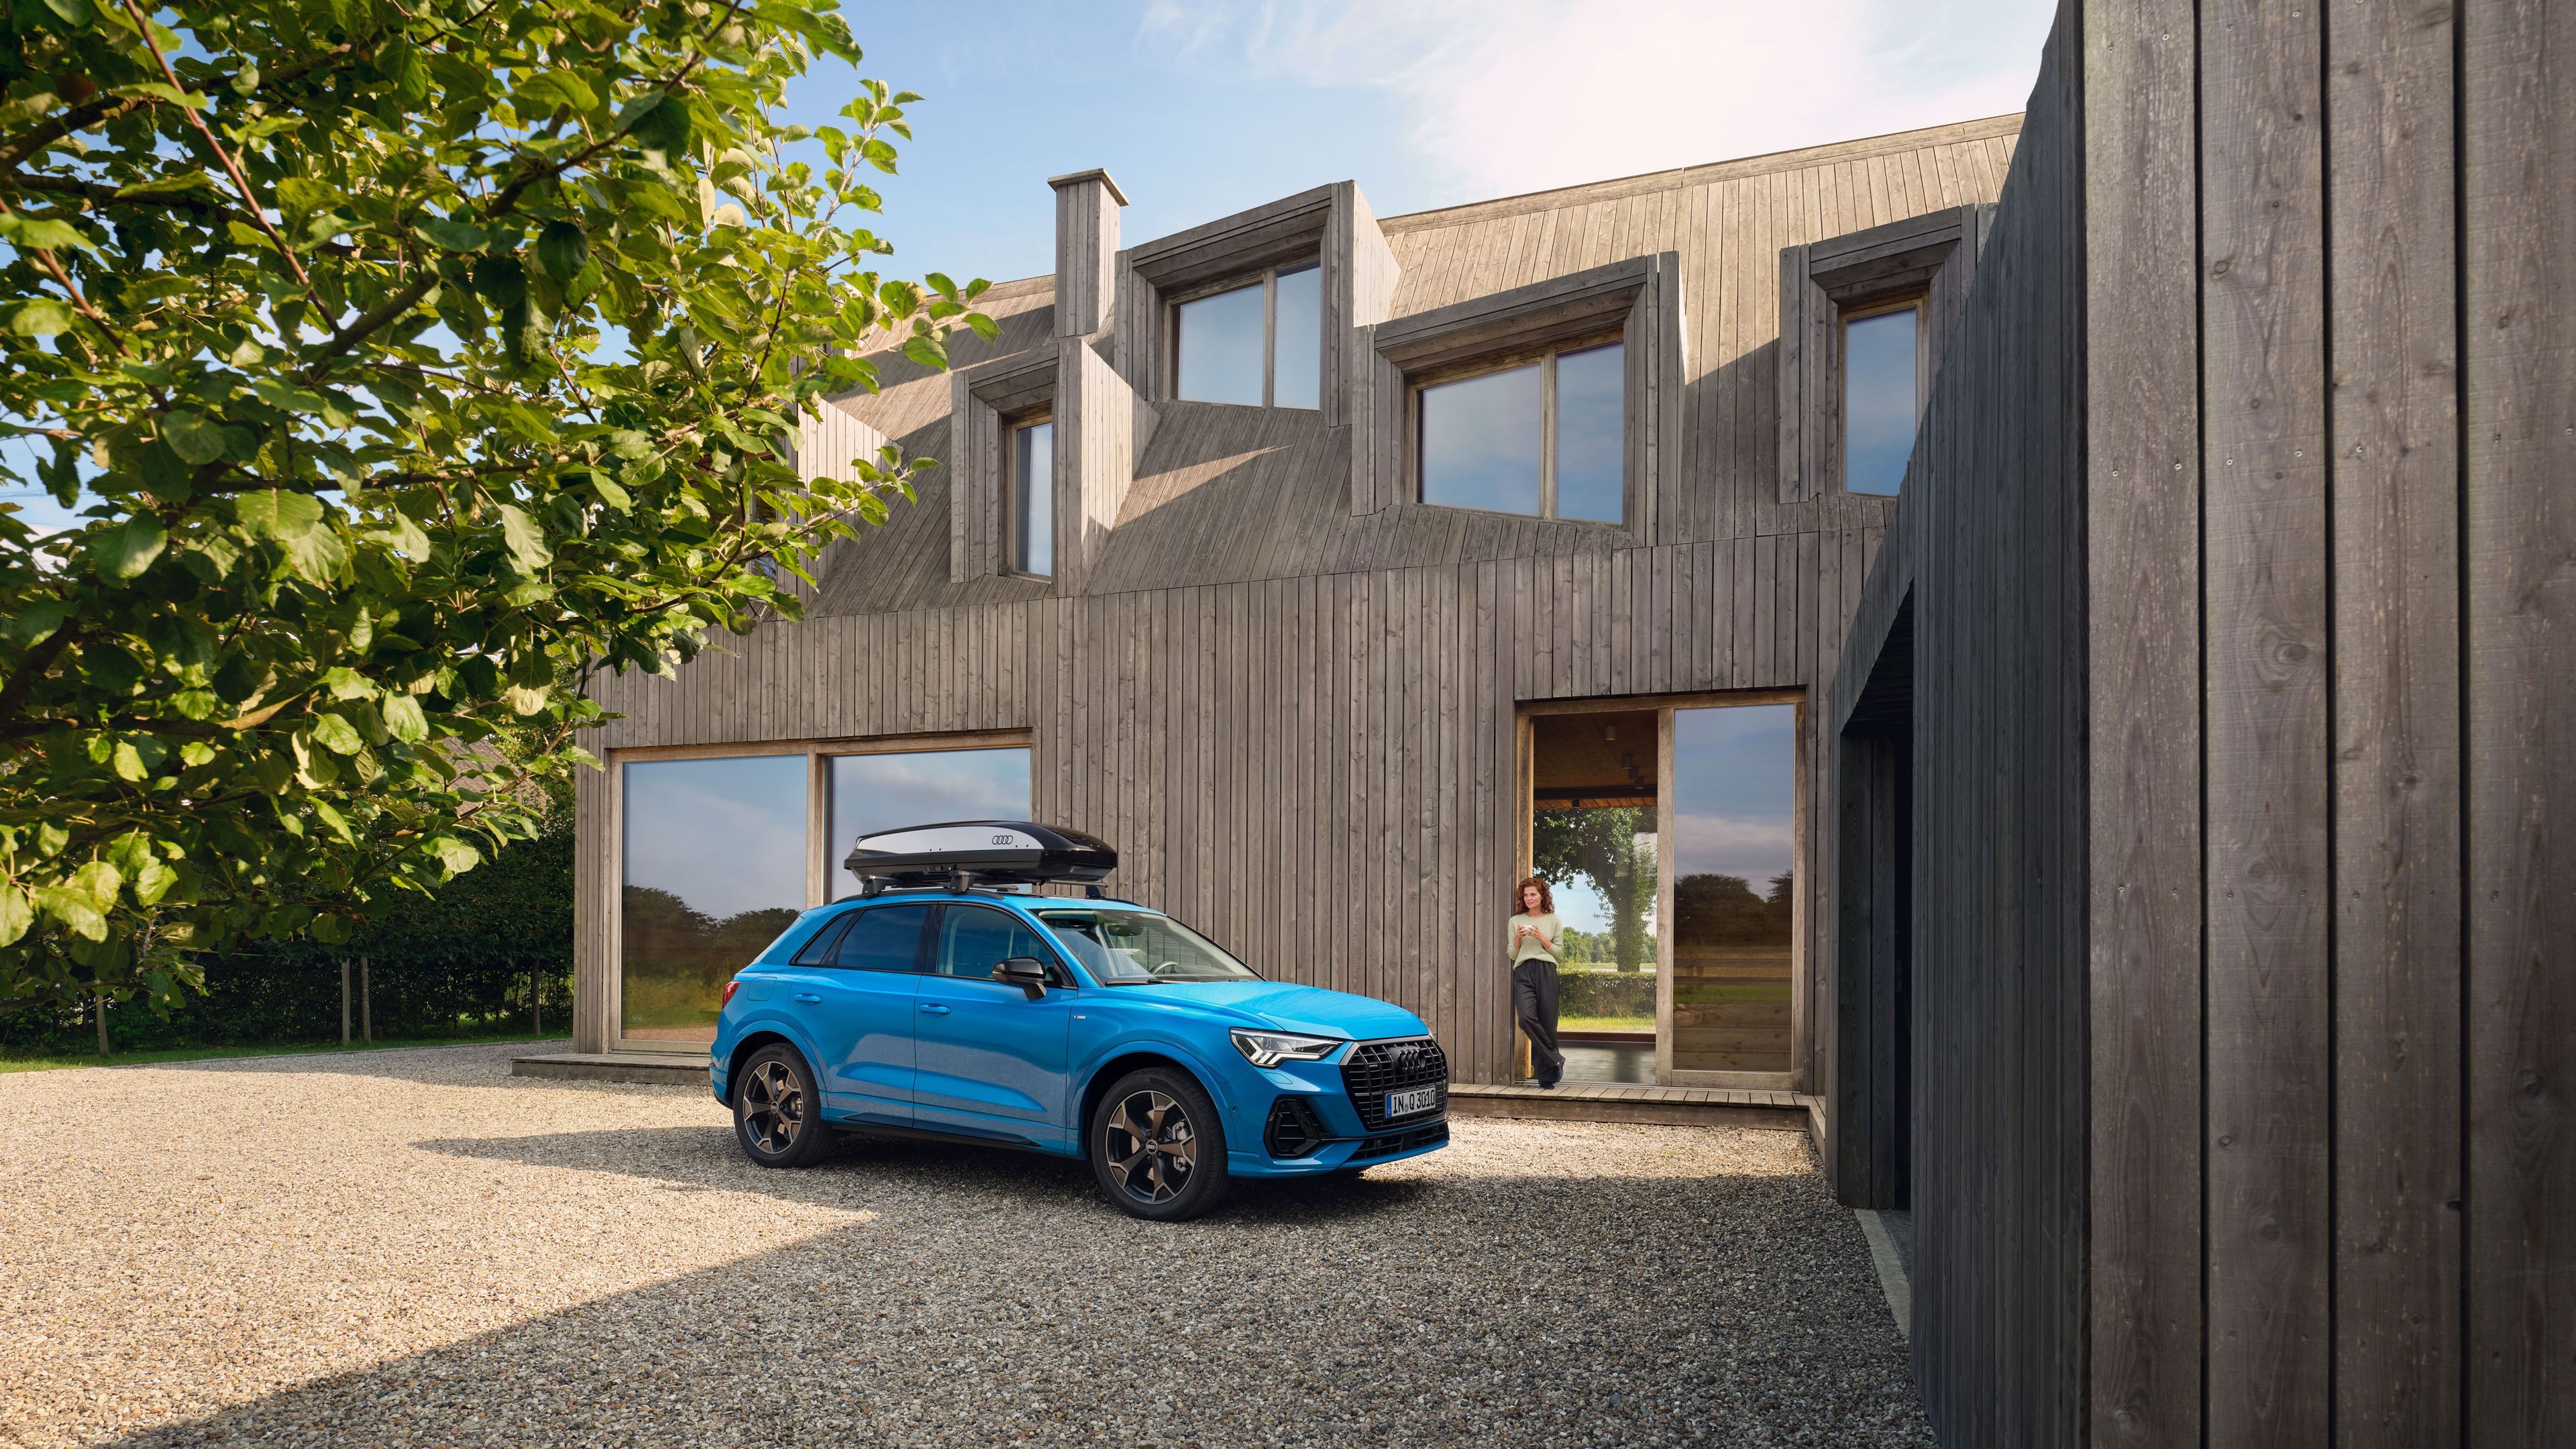 Blauer Audi mit Dachbox parkt in einer Einfahrt